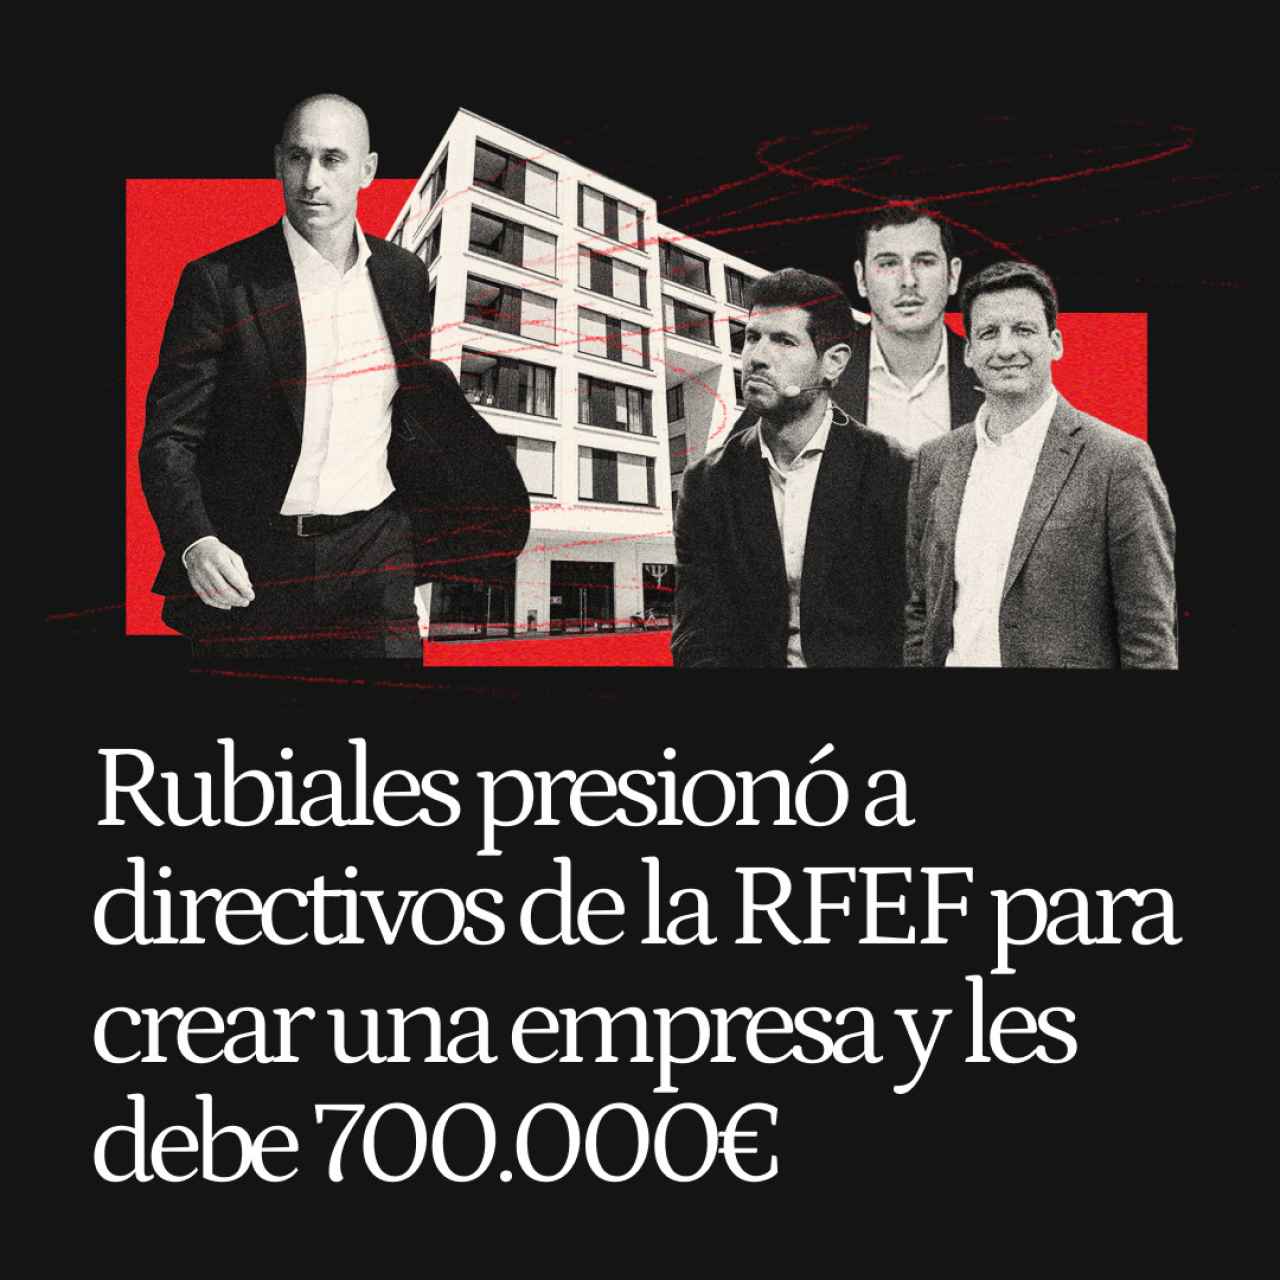 Rubiales presionó a los directivos de la RFEF para crear una empresa, ocultó datos y les debe 700.000 €